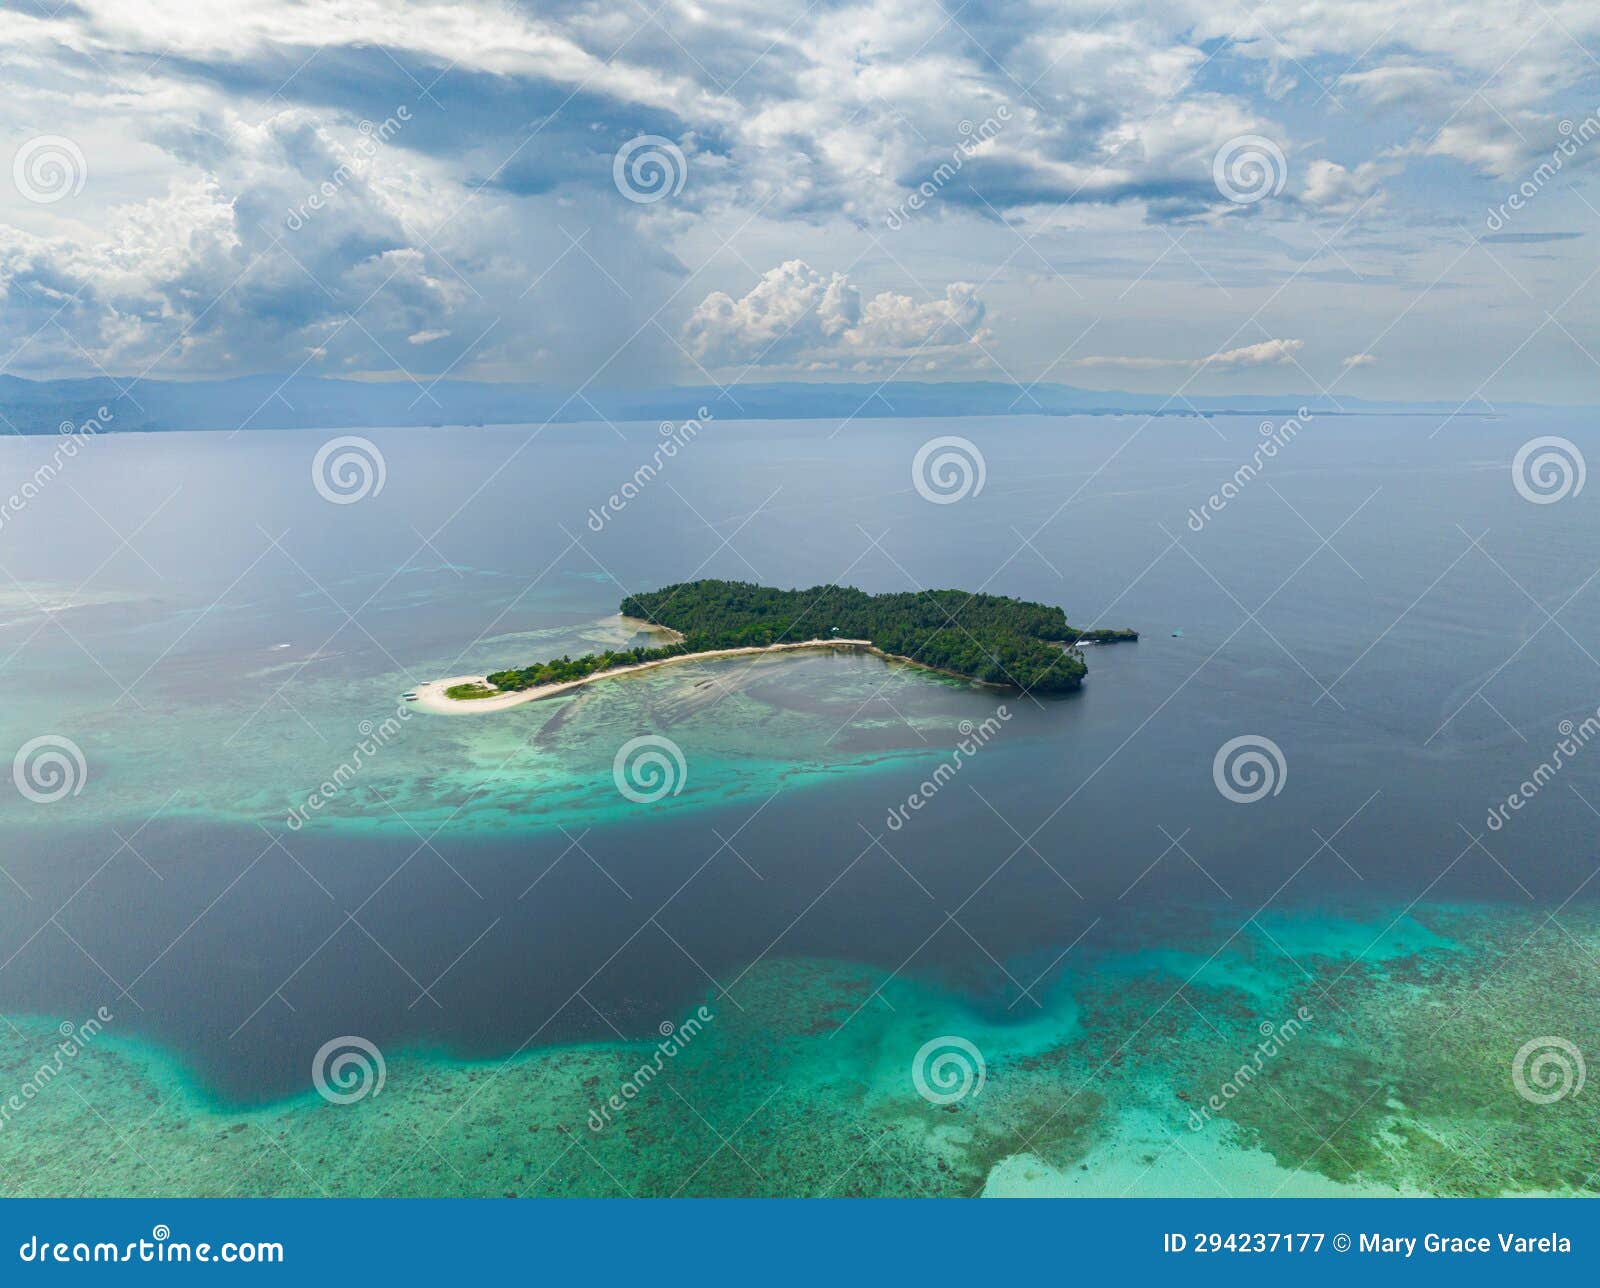 cabgan islet in barobo, surigao del sur. philippines.